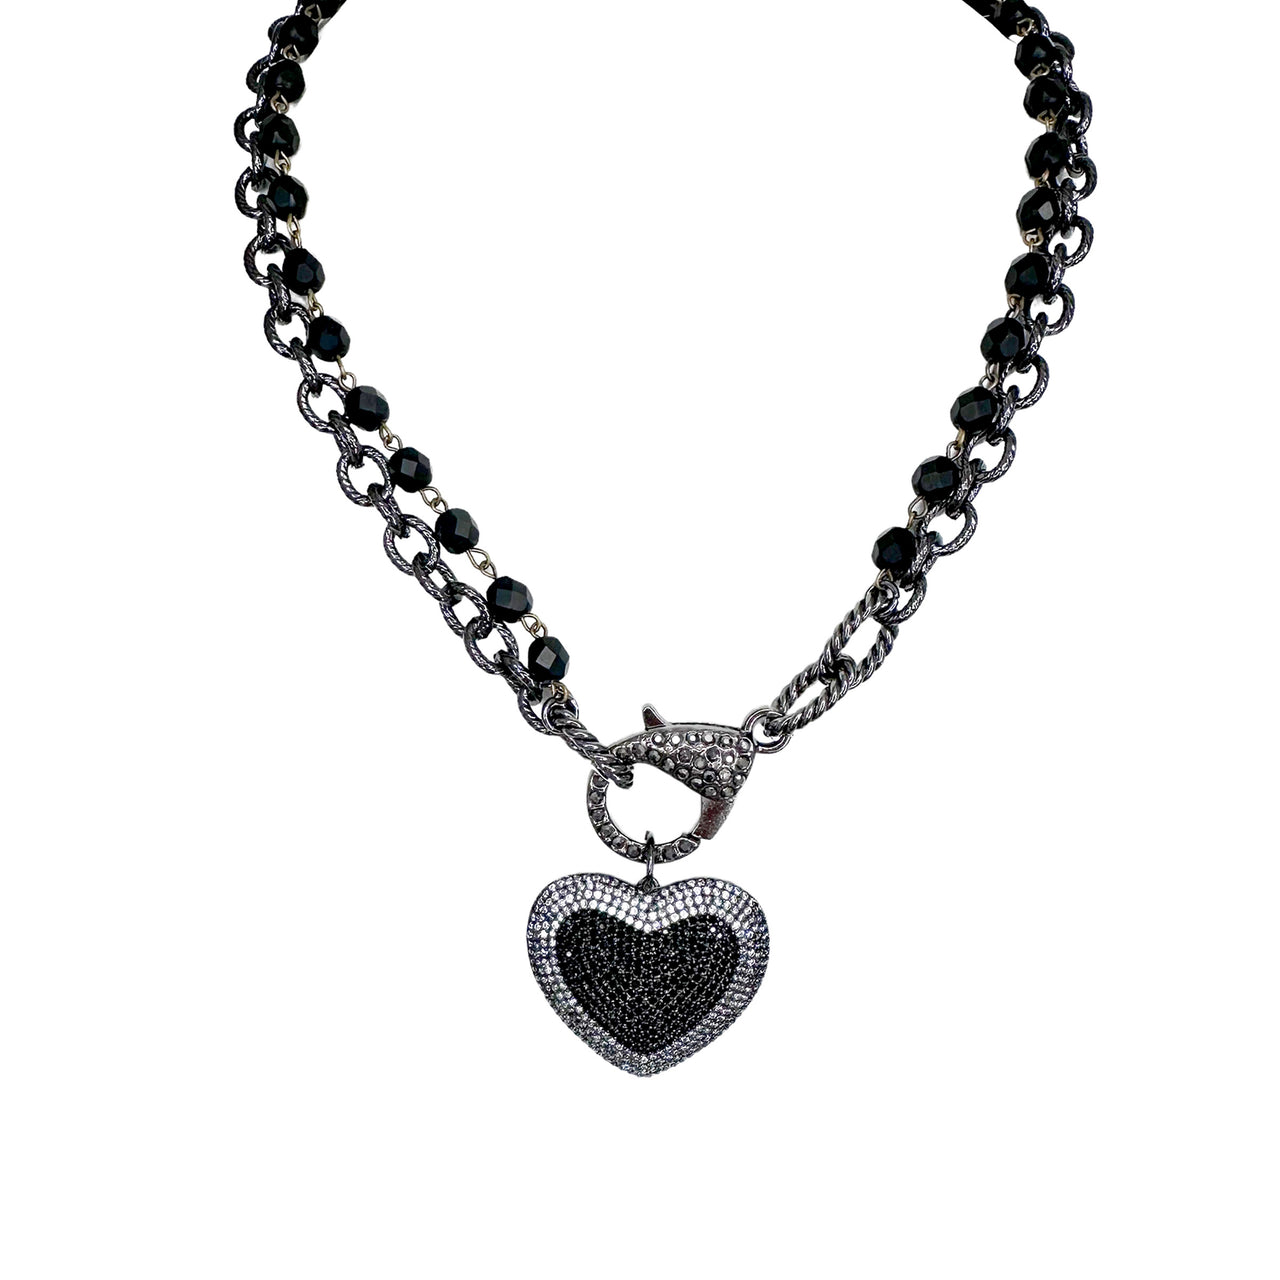 Lori Lovers Lane Necklace